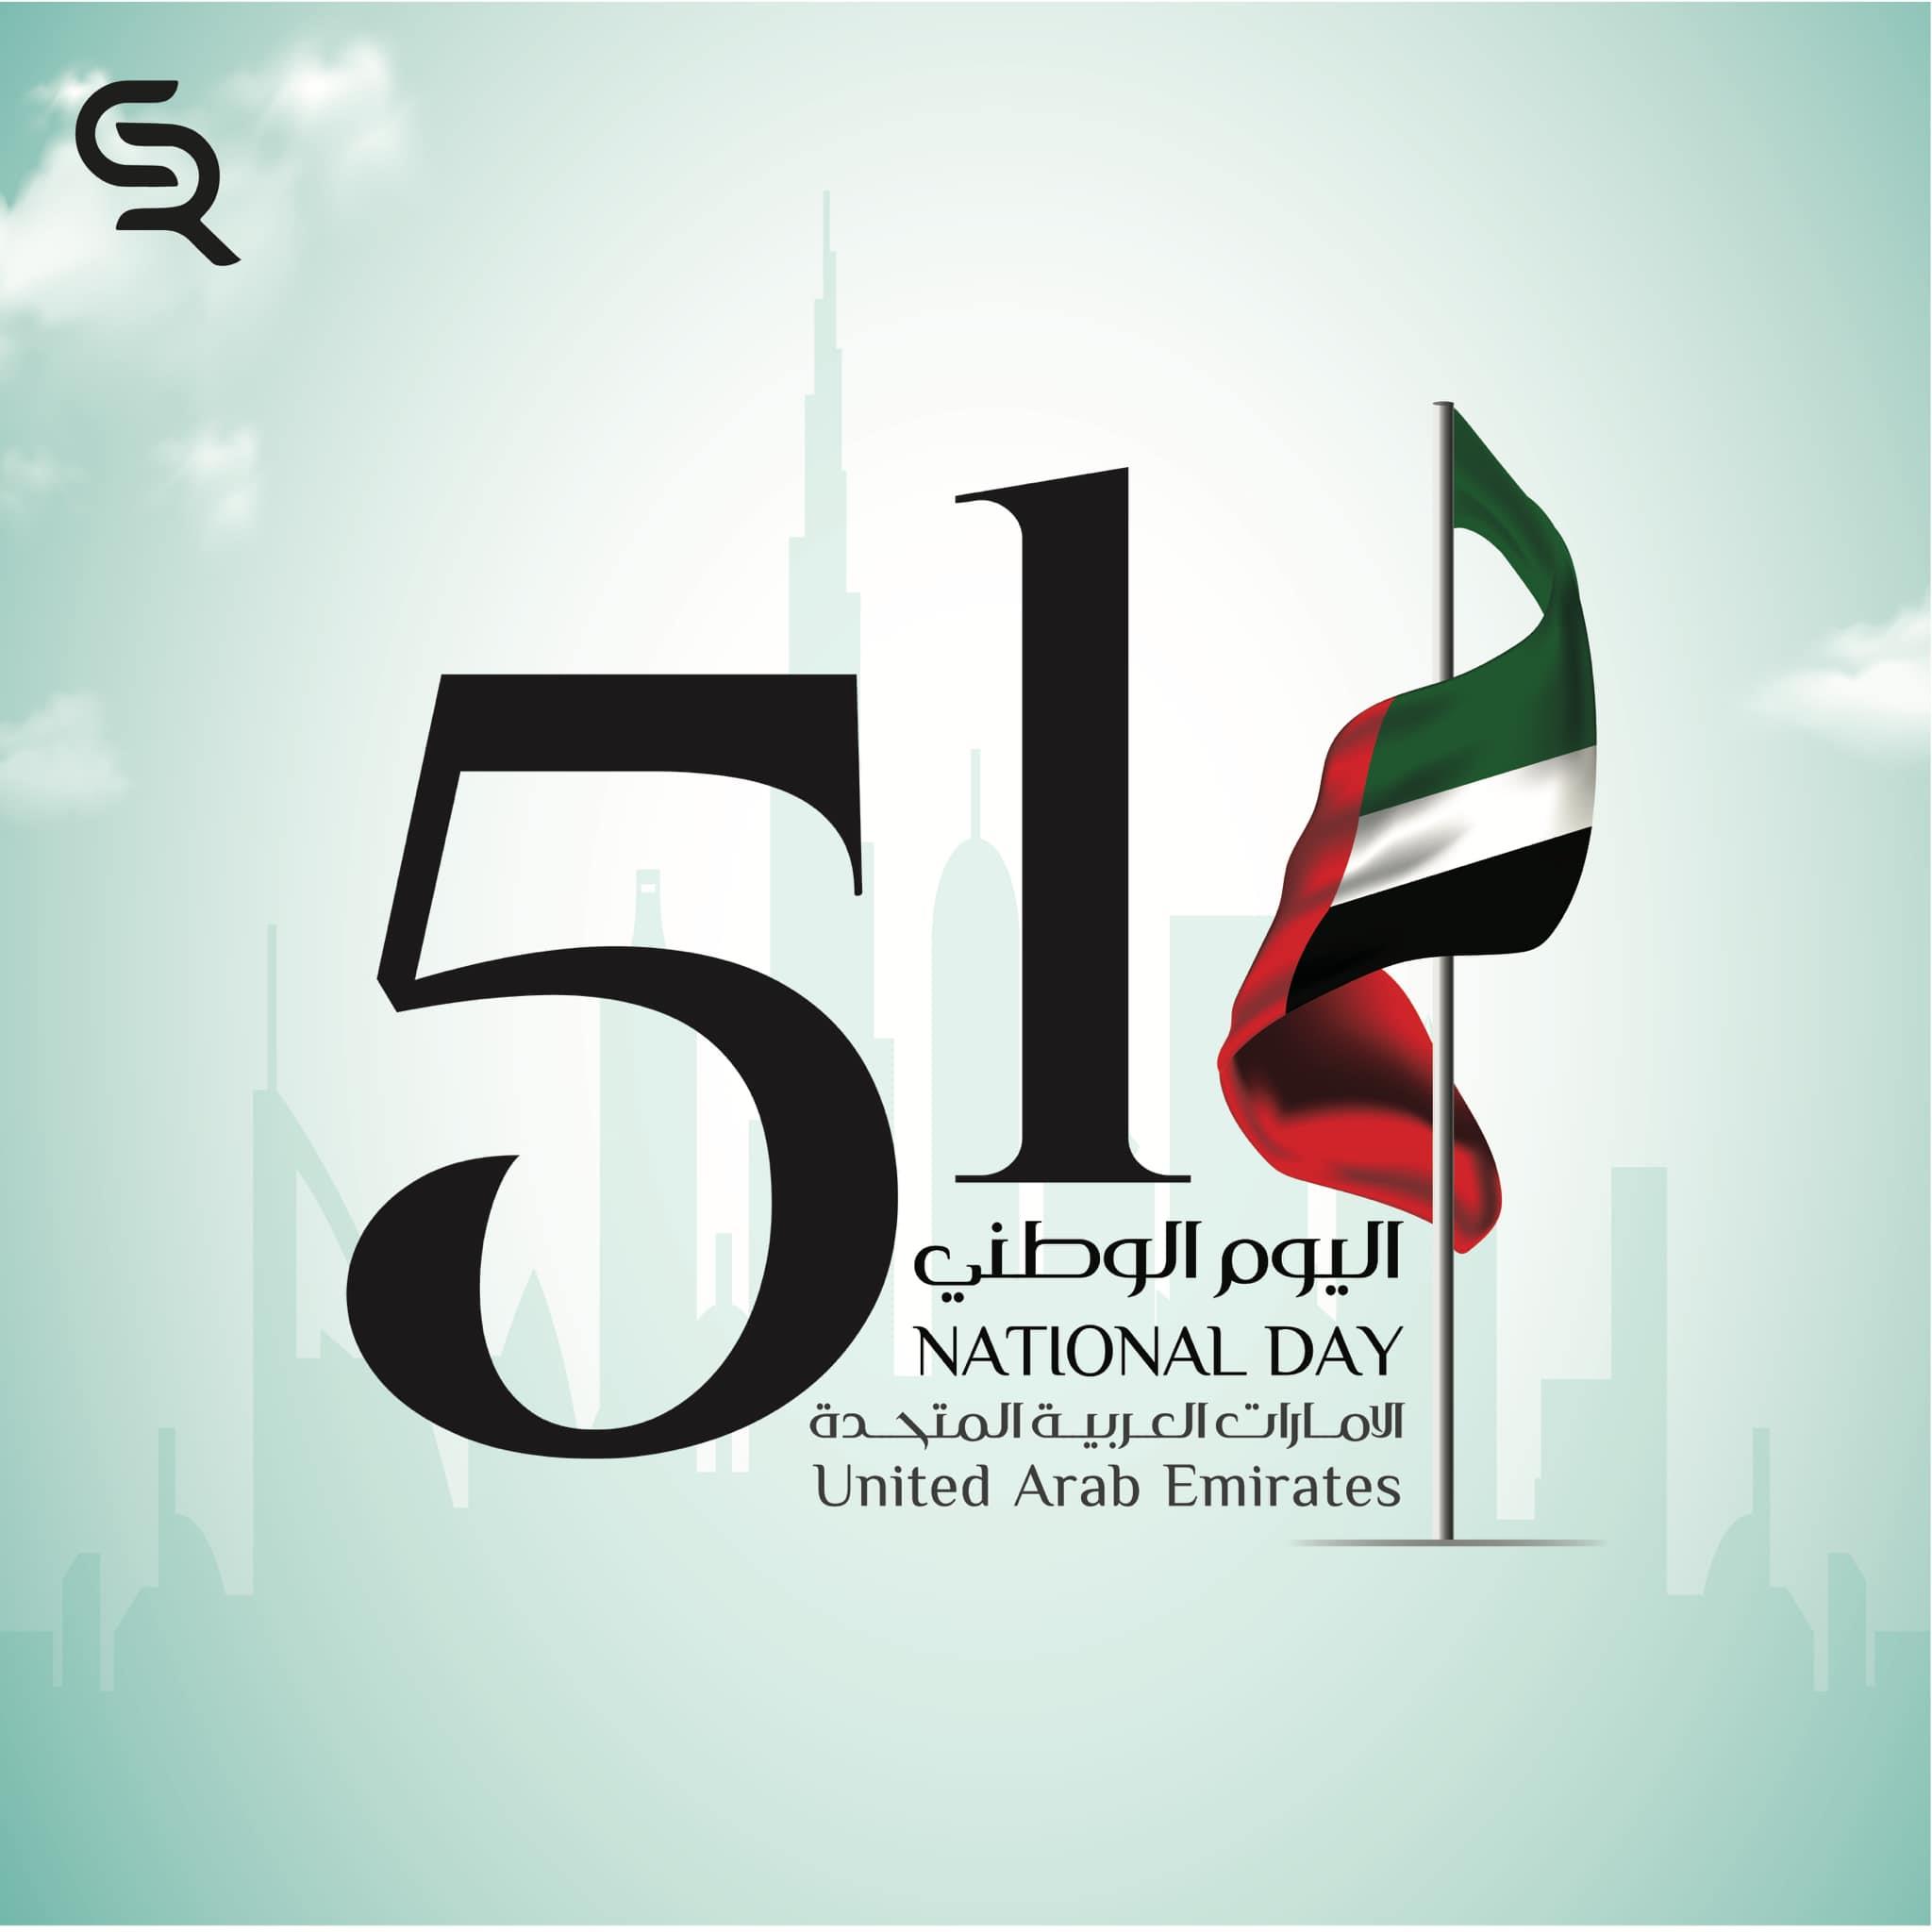 اليوم الوطني للإمارات العربية المتحدة